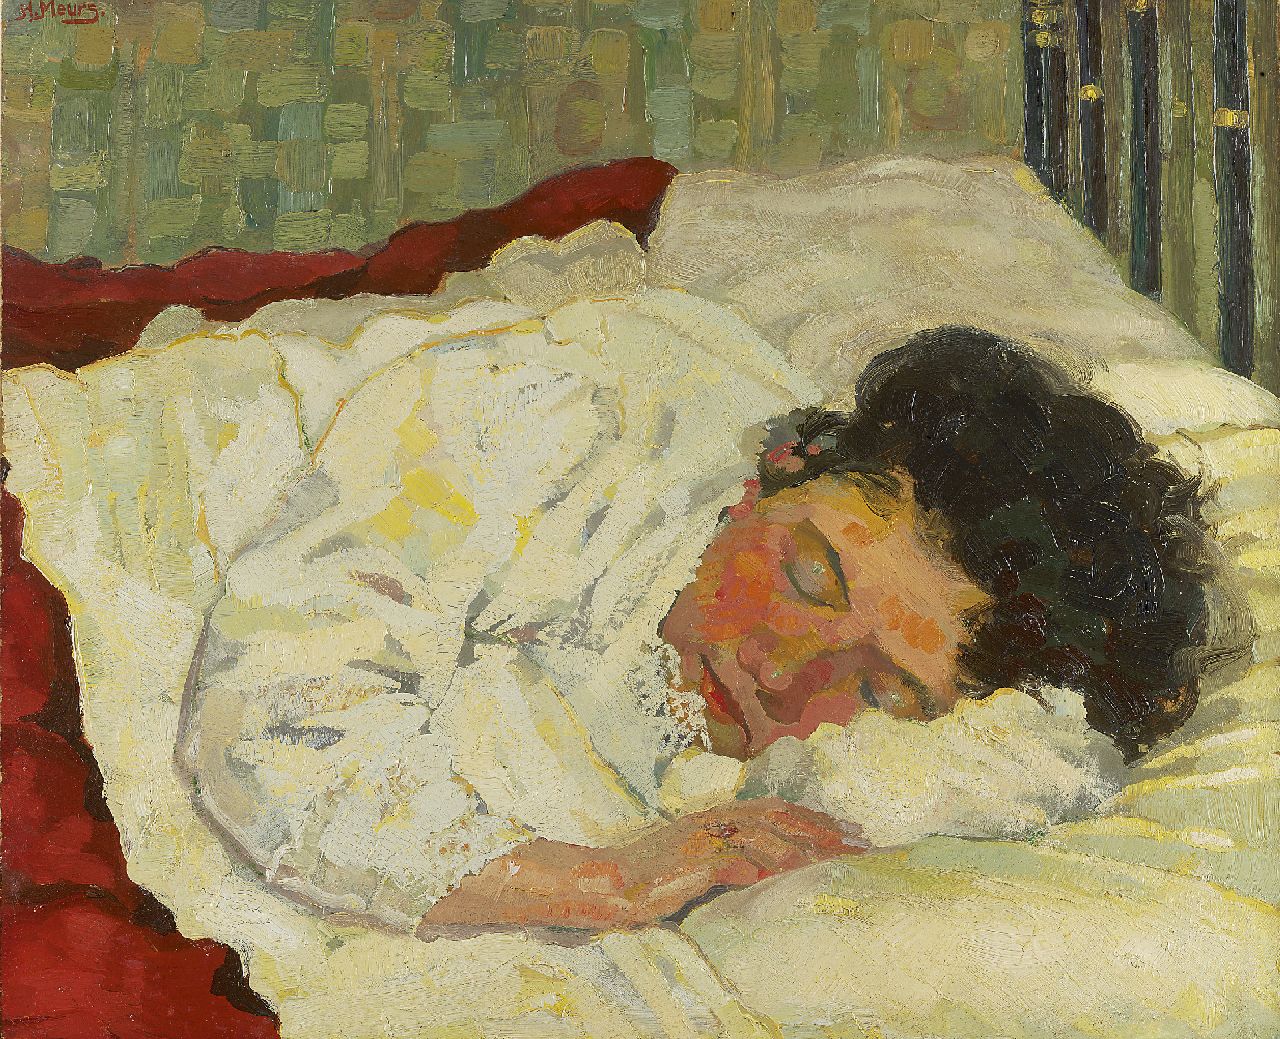 Meurs H.H.  | 'Harmen' Hermanus Meurs, Sleeping woman, oil on cardboard 56.3 x 68.0 cm, signed u.l. and painted ca. 1923